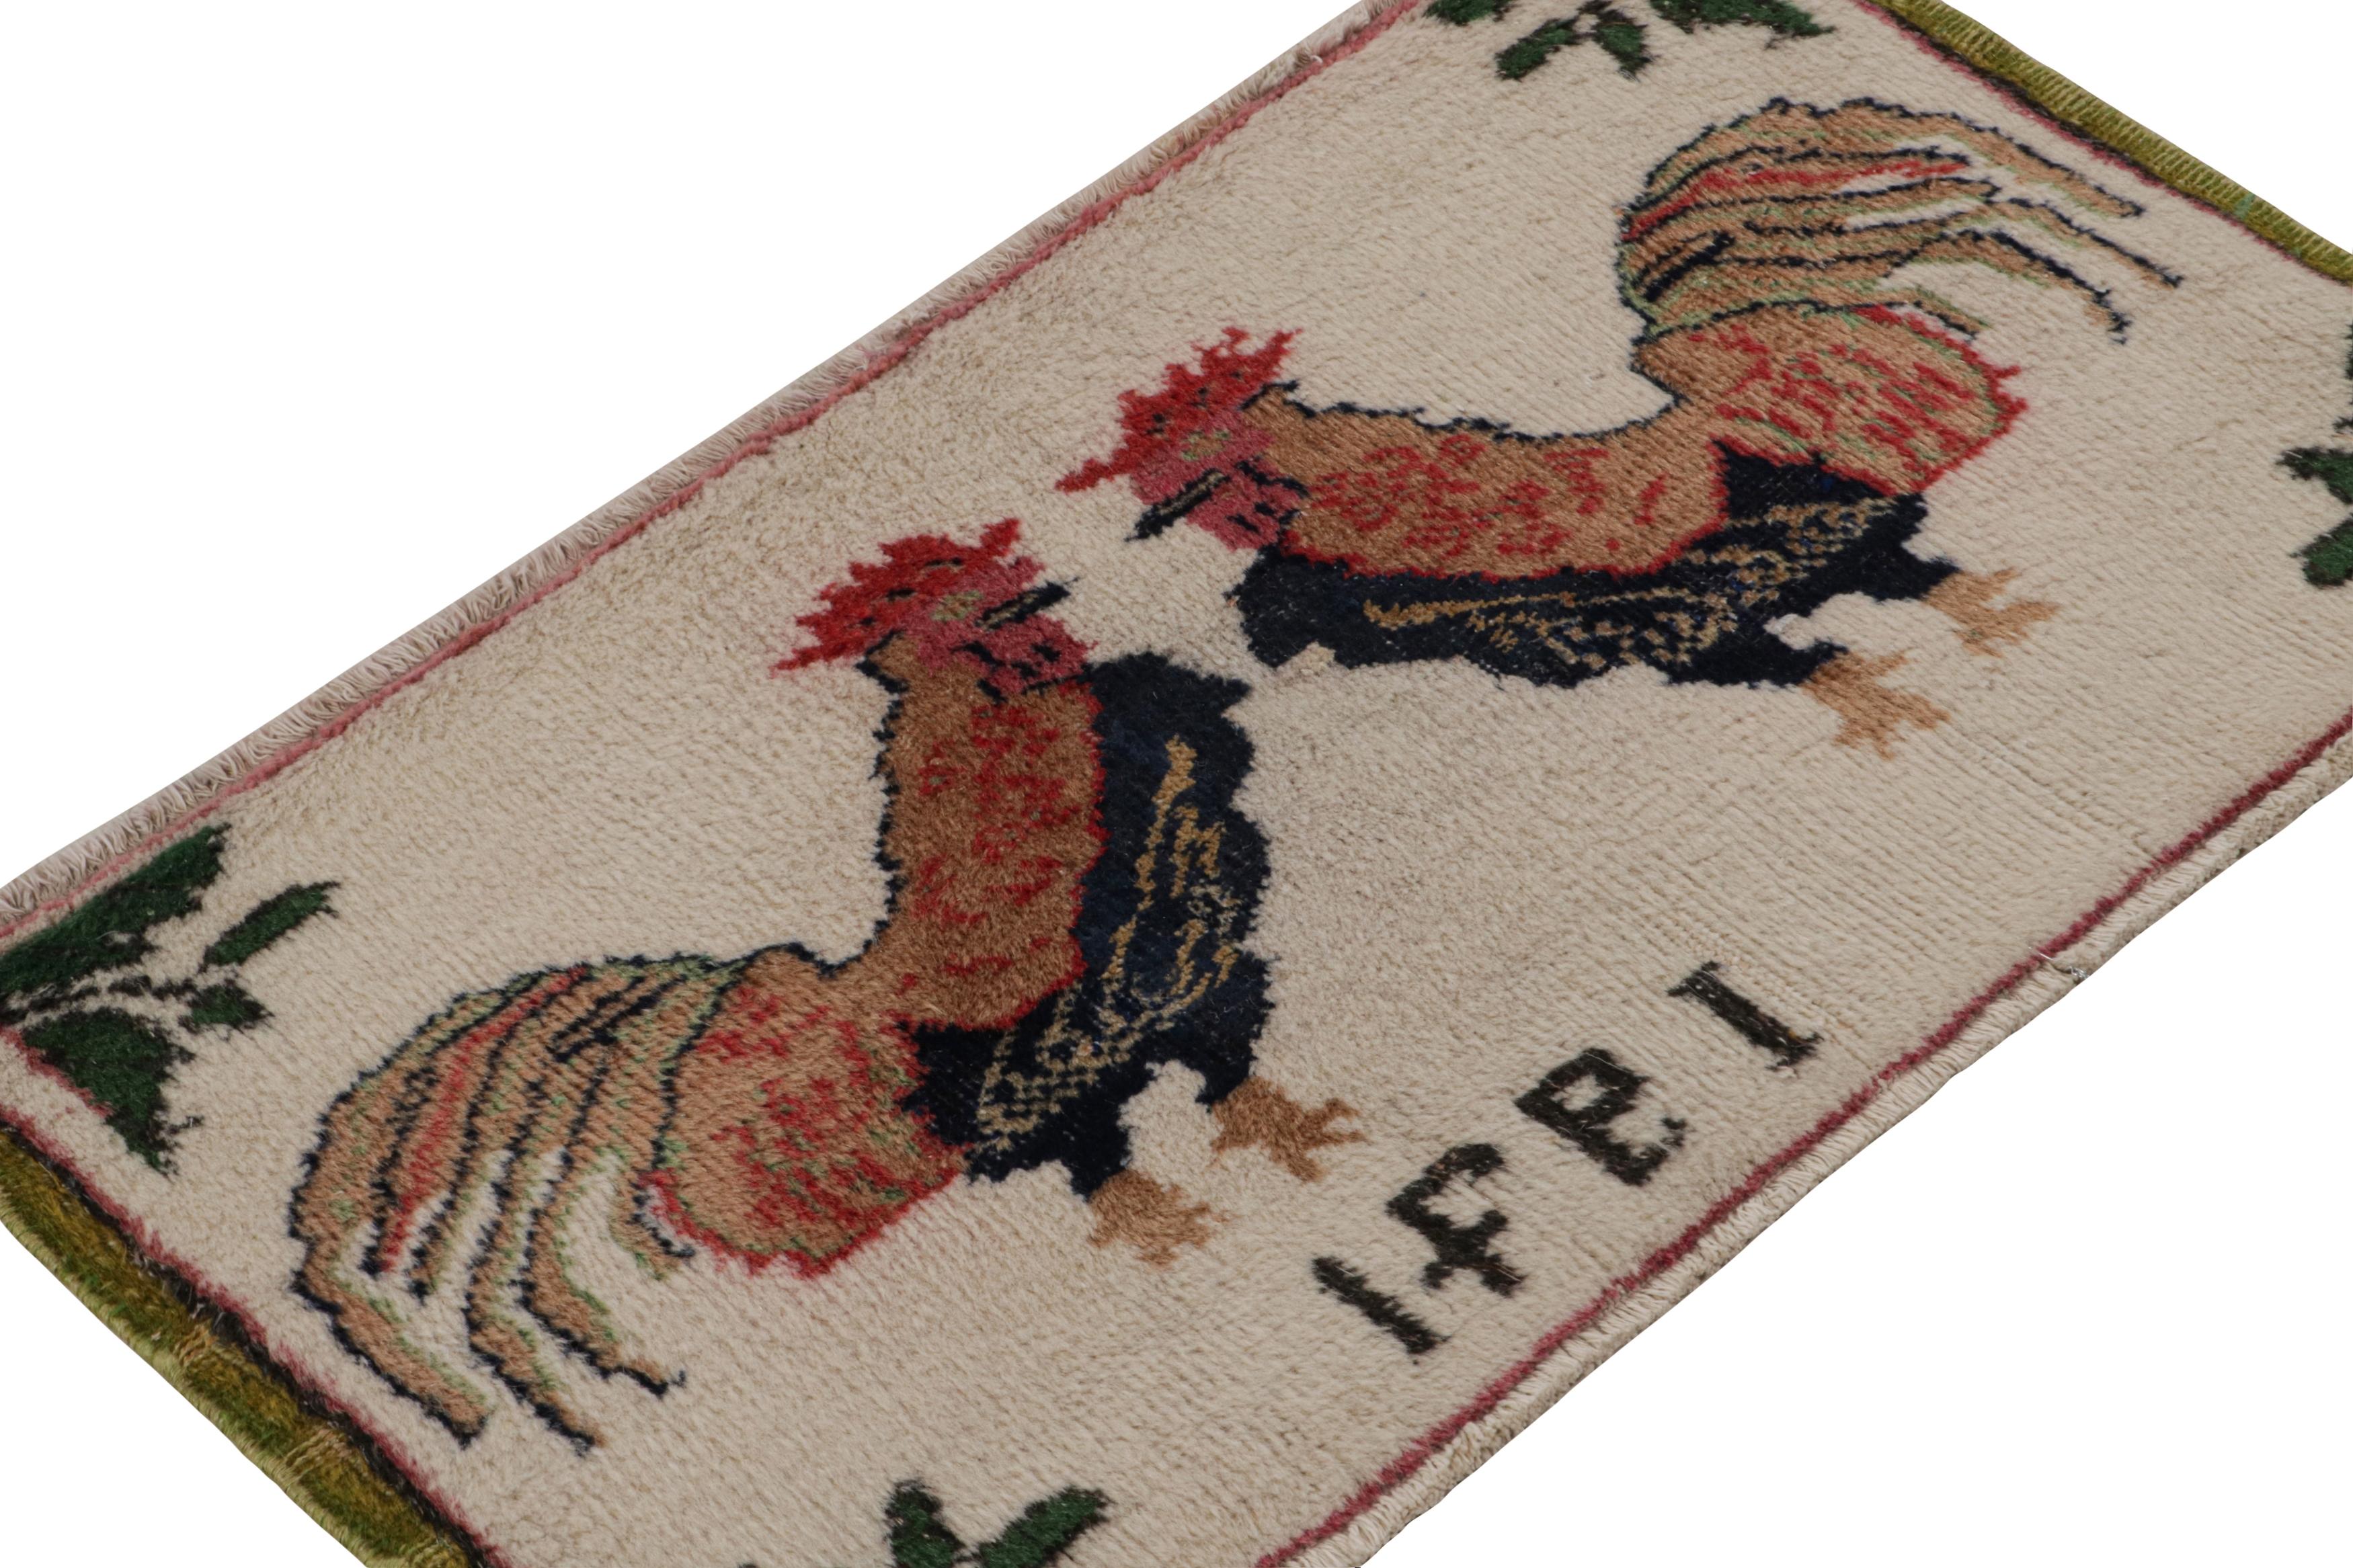 Dieser aus Wolle handgeknüpfte türkische 2x3-Vintage-Teppich hat ein seltenes Bildmotiv mit zwei Hähnen - eine aufregende neue Kuration von Rug & Kilim. Mit der Angabe einer gewebten Jahreszahl unten im Feld kann das Design den Arbeiten von Zeki